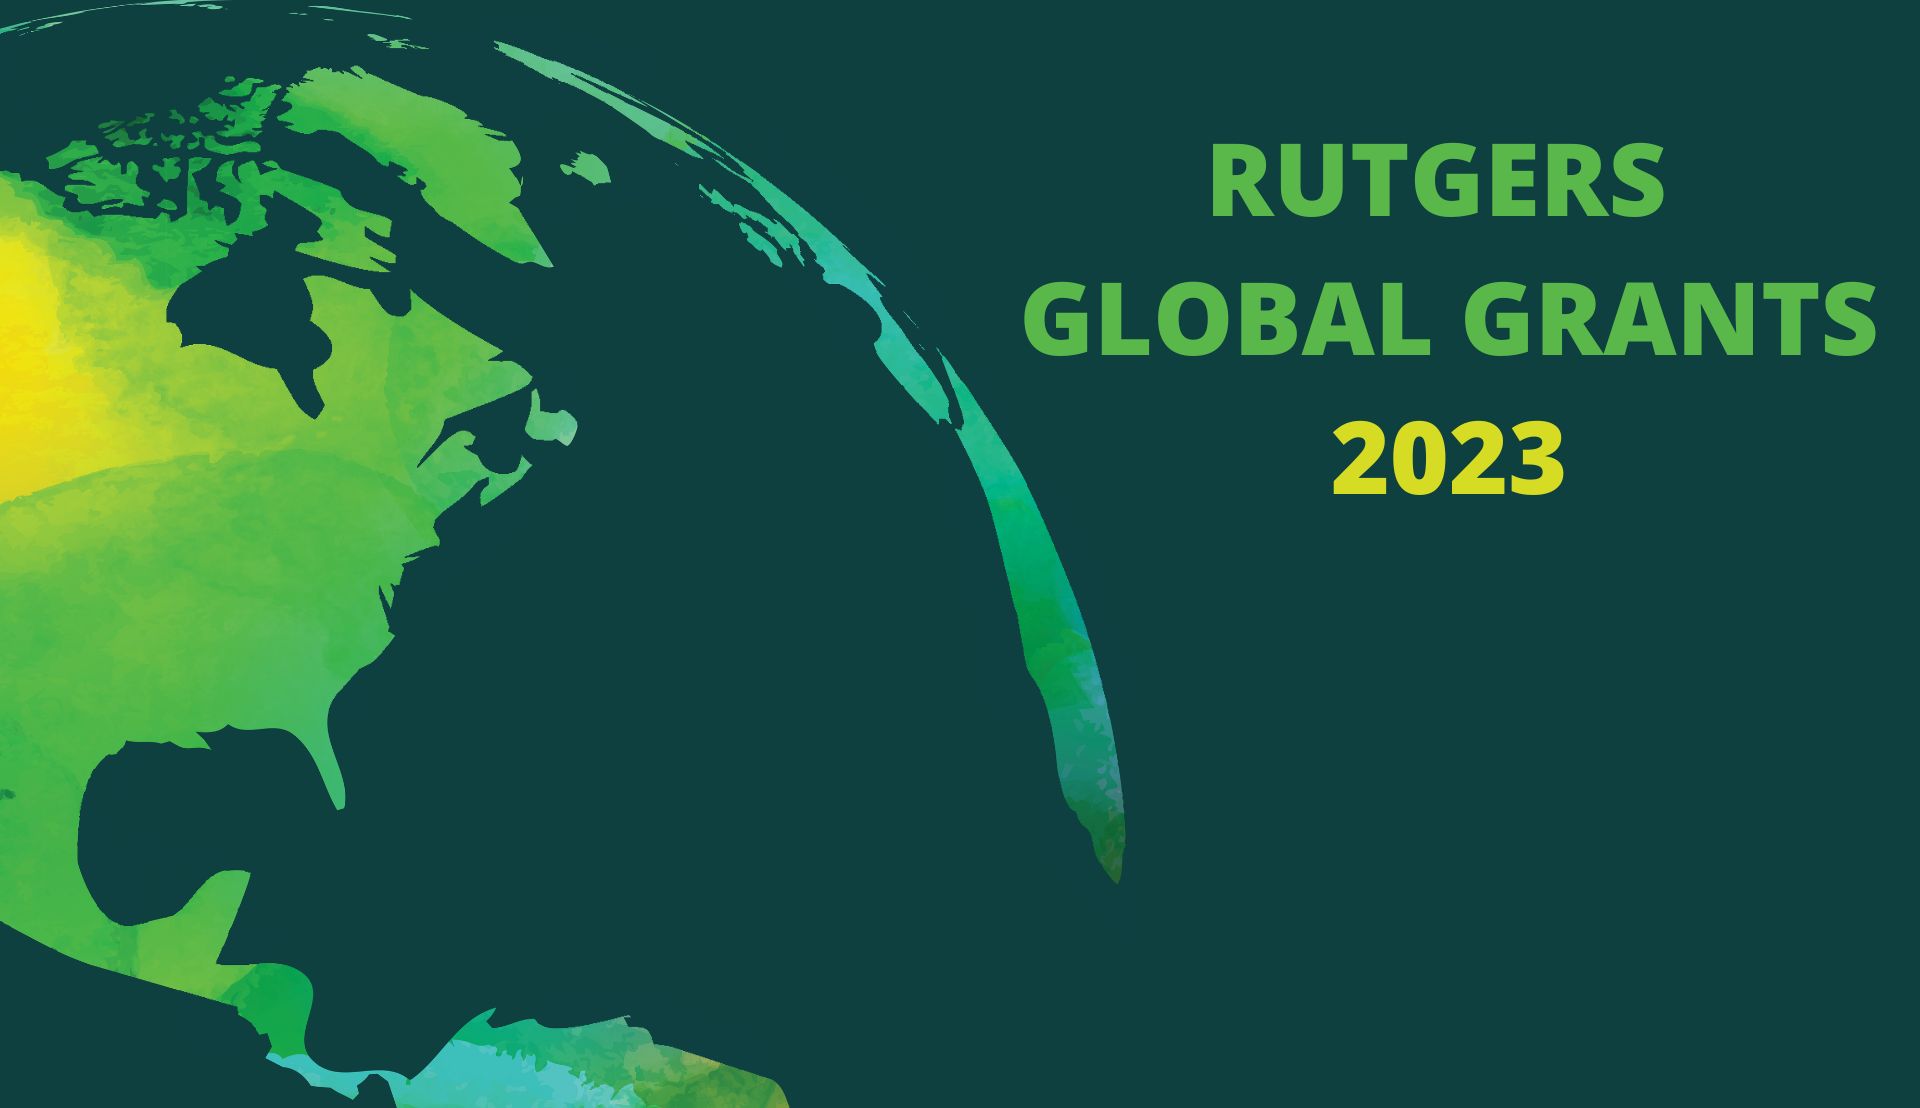 Rutgers Global Grants 2023 Recipients graphic image